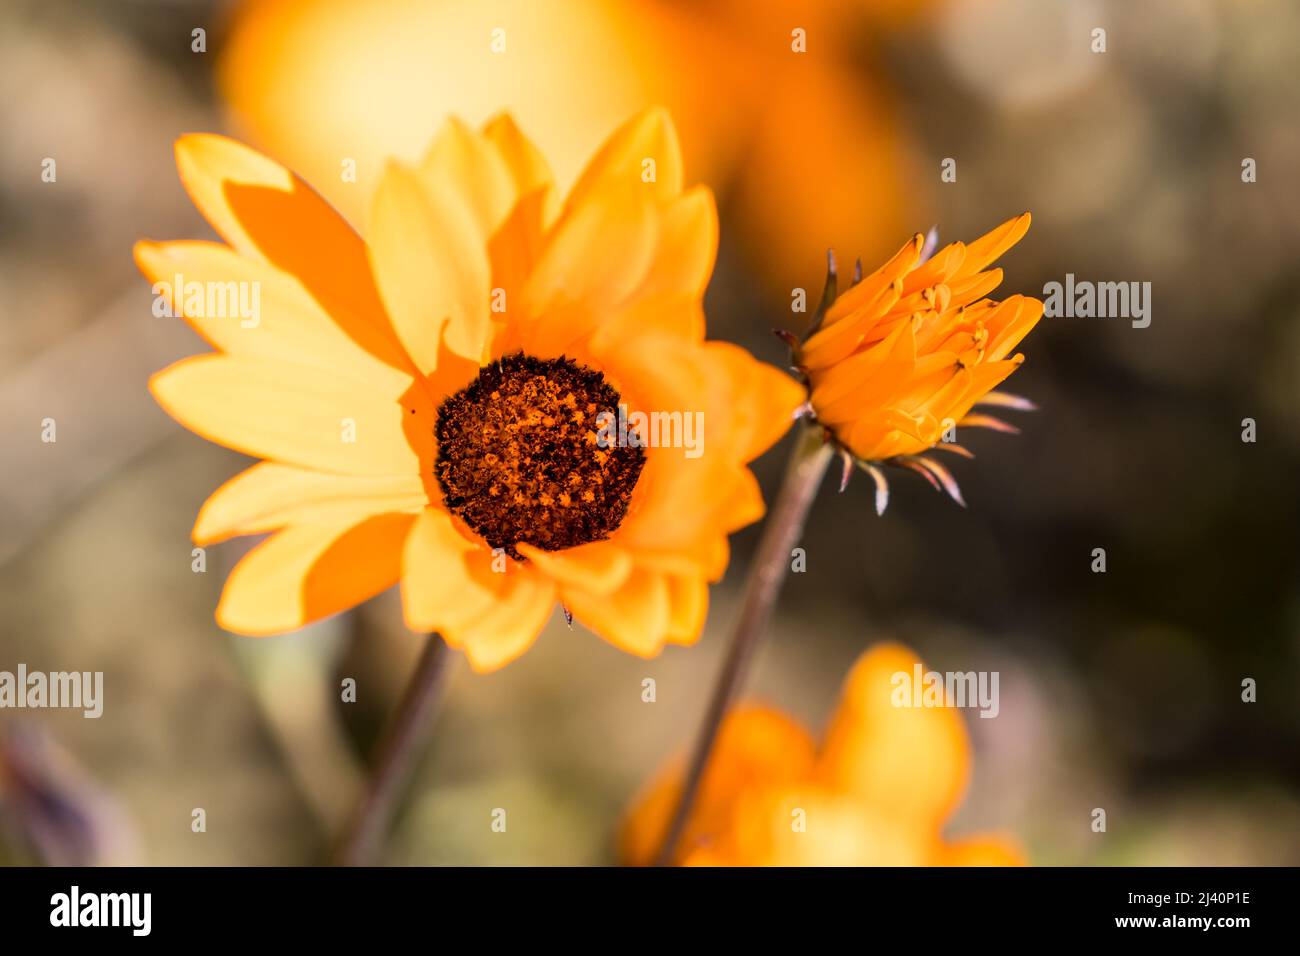 Namaqua marigold o gousblom (Arctotis hirsuta) primavera fiore daisy in Capo occidentale, Sud Africa primo piano e aperto verso il sole in natura Foto Stock